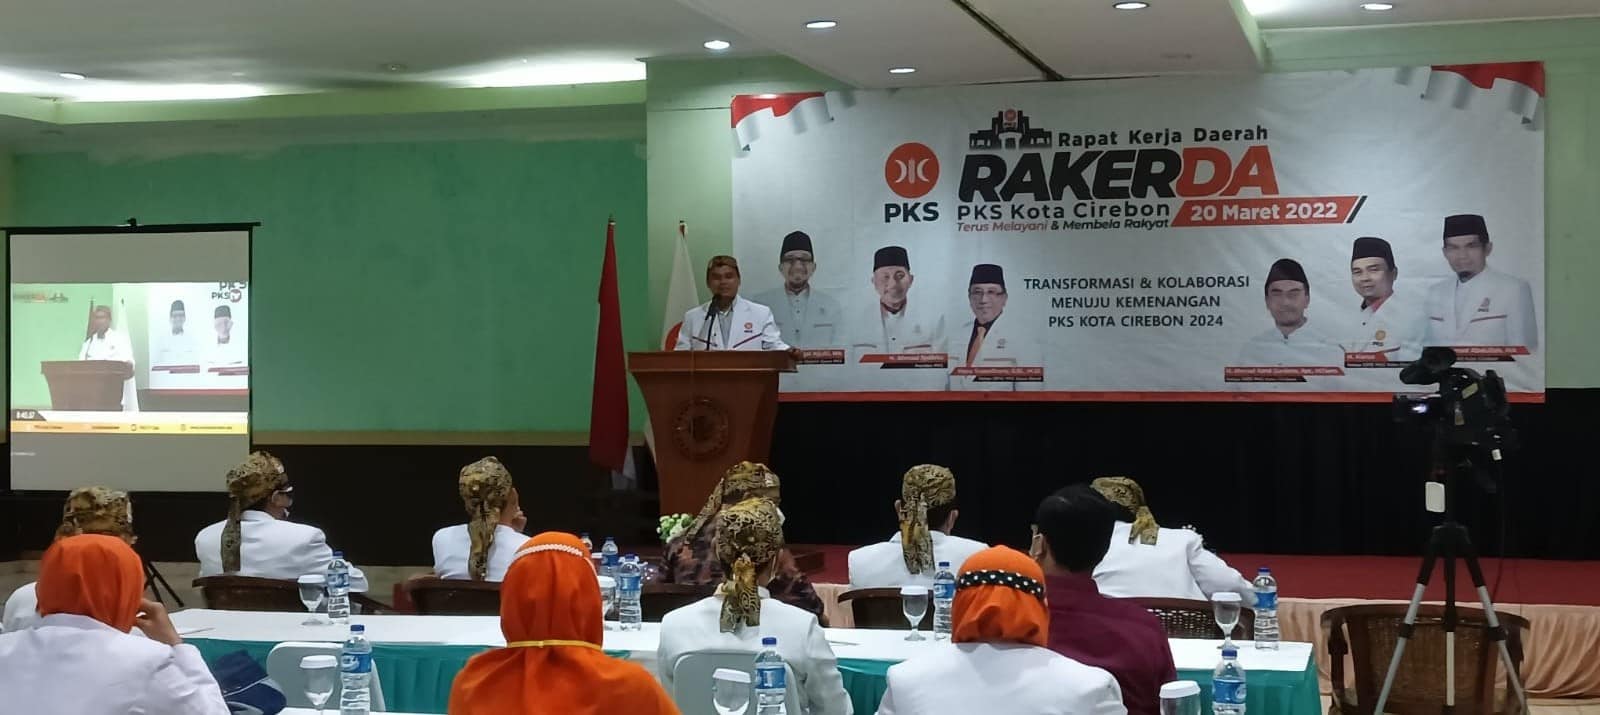 Gelar Rakerda, PKS Siap Putihkan Kota Cirebon